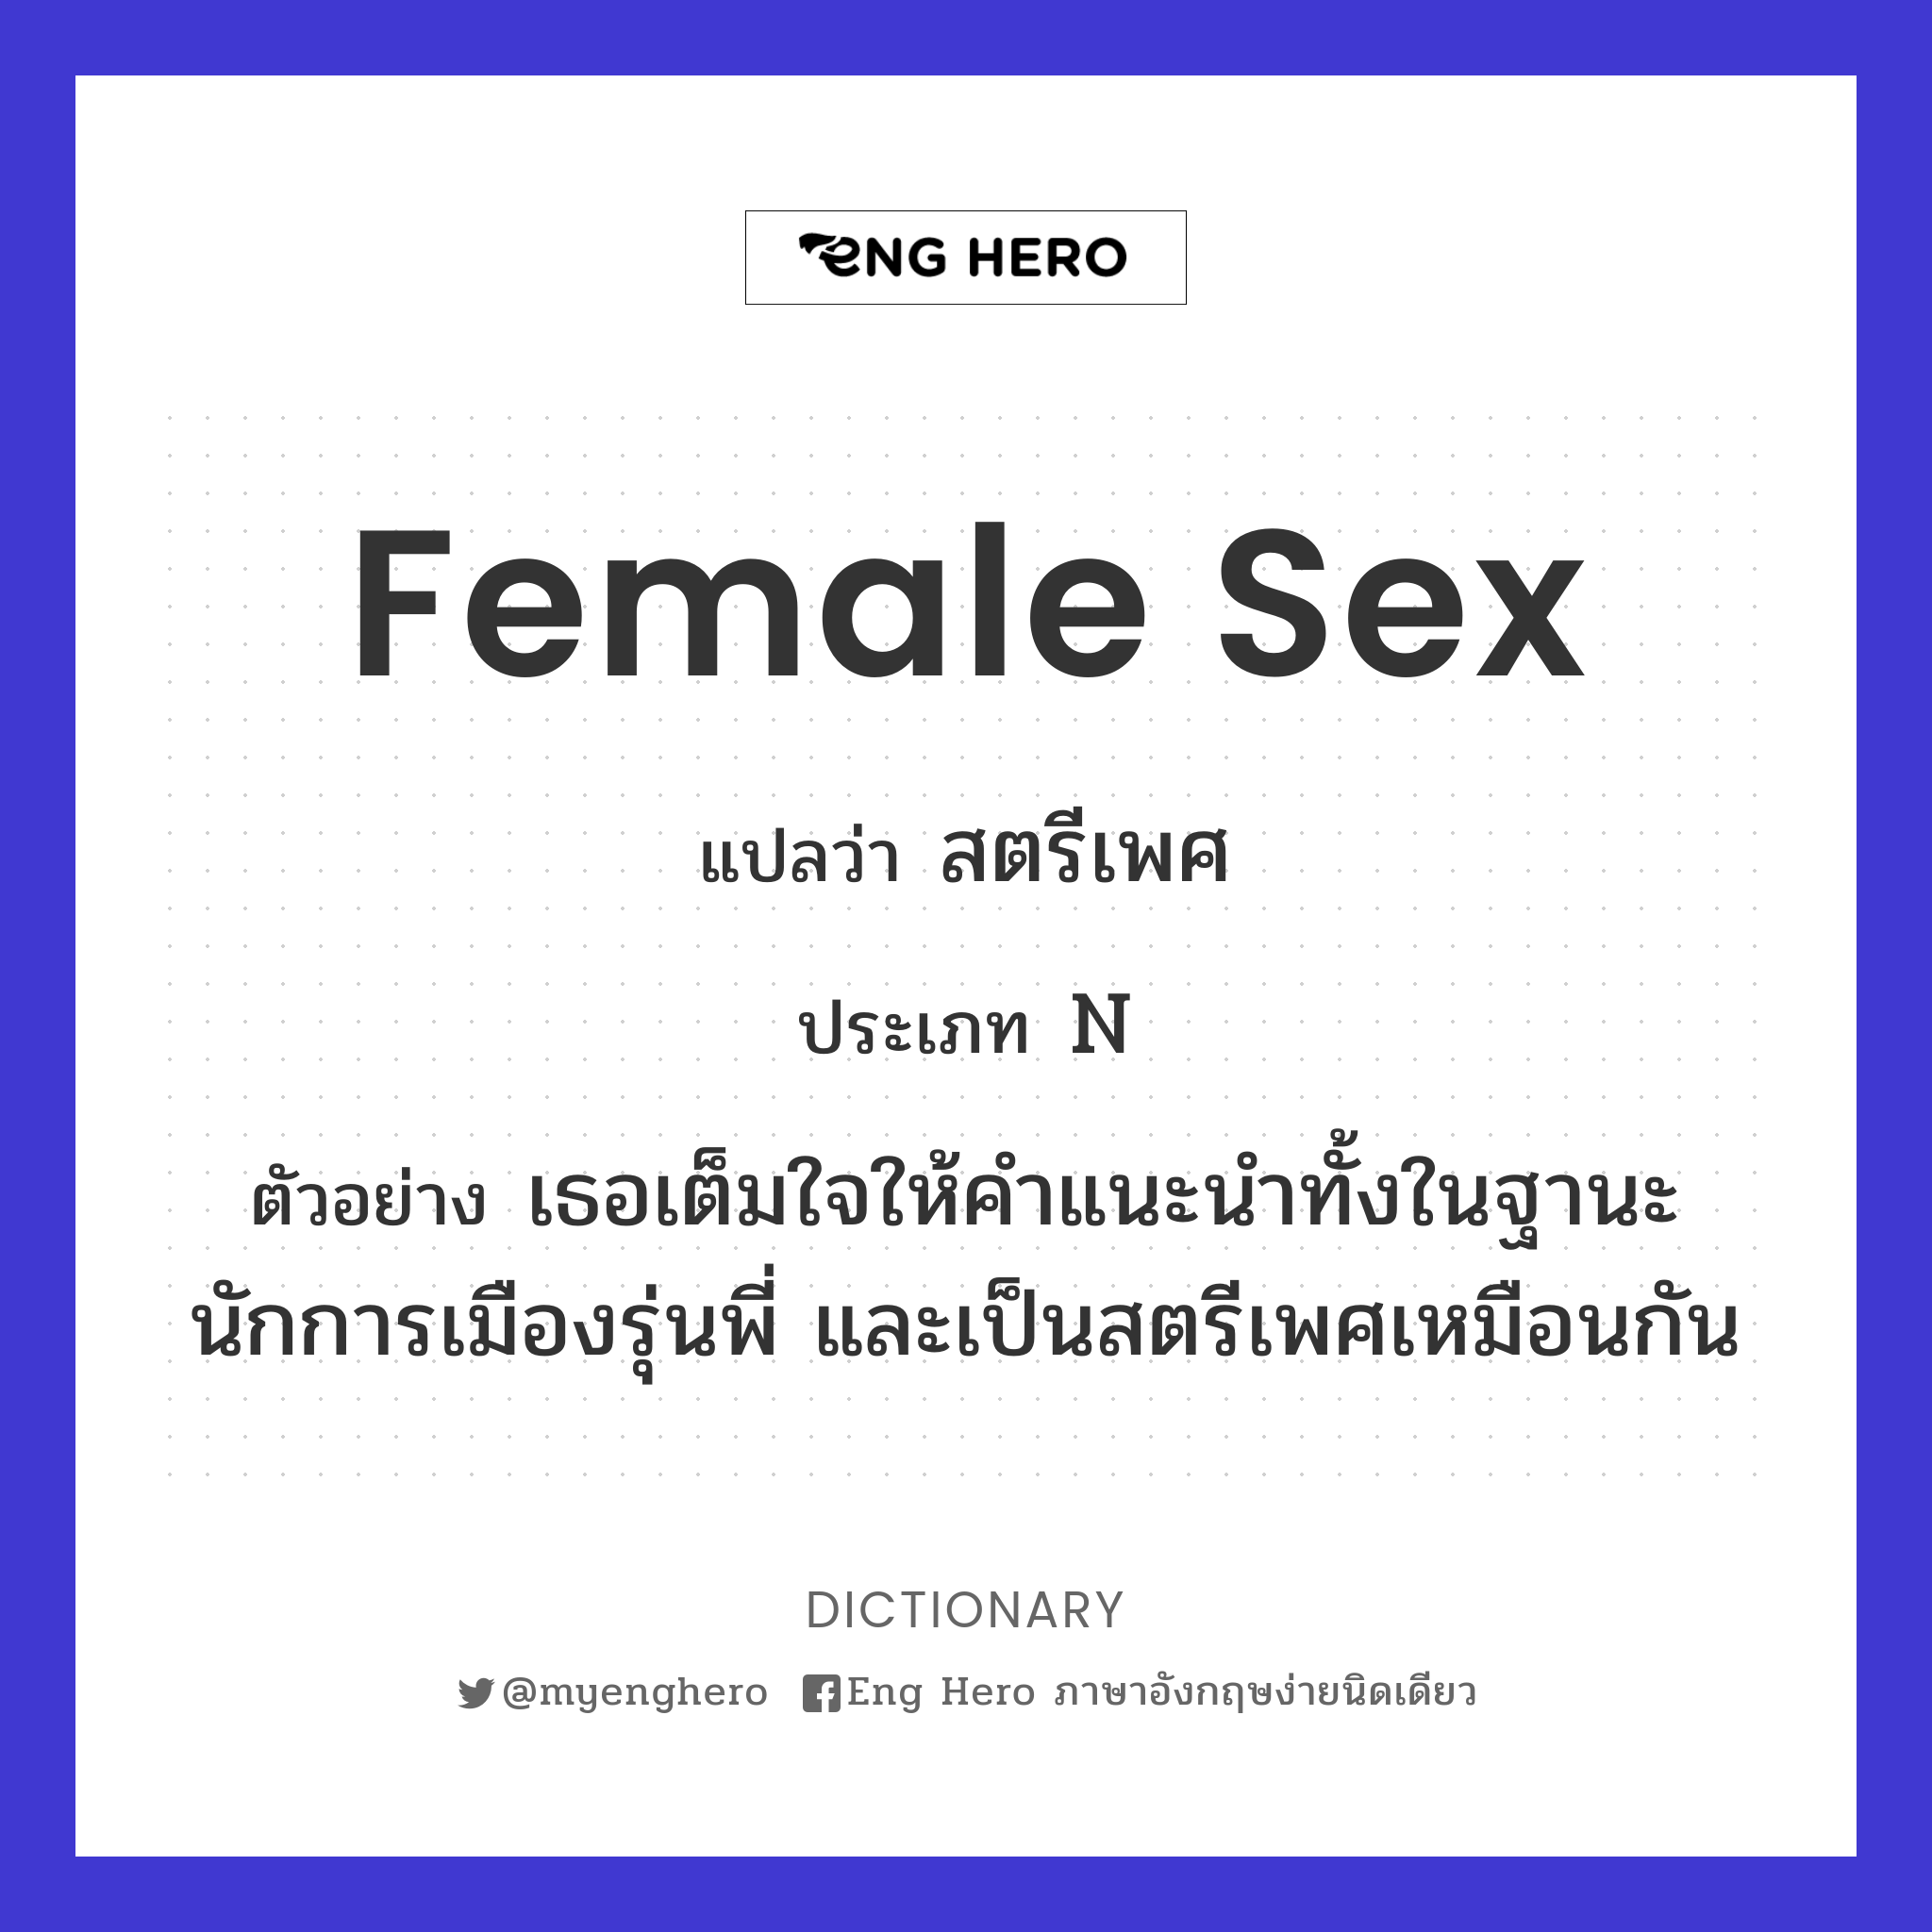 female sex